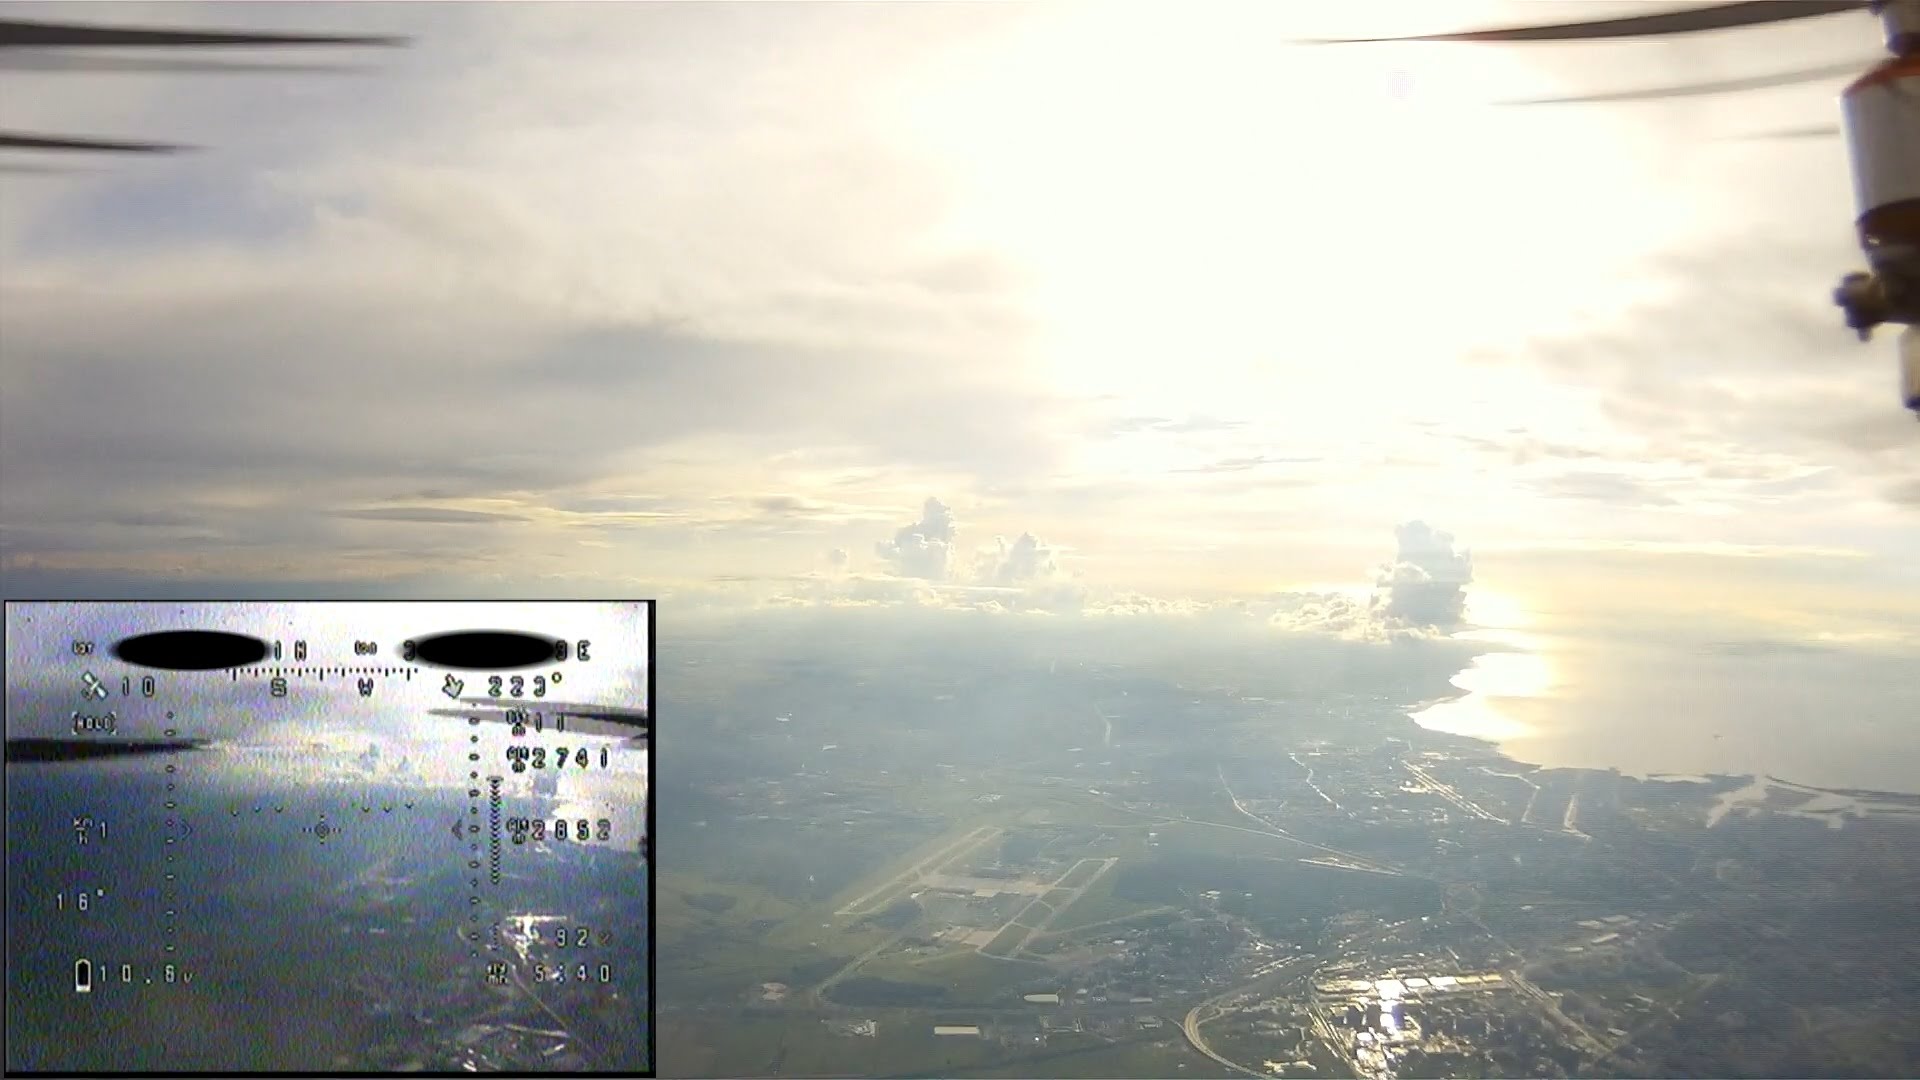 Hexacopter altitude 3.2km FPV